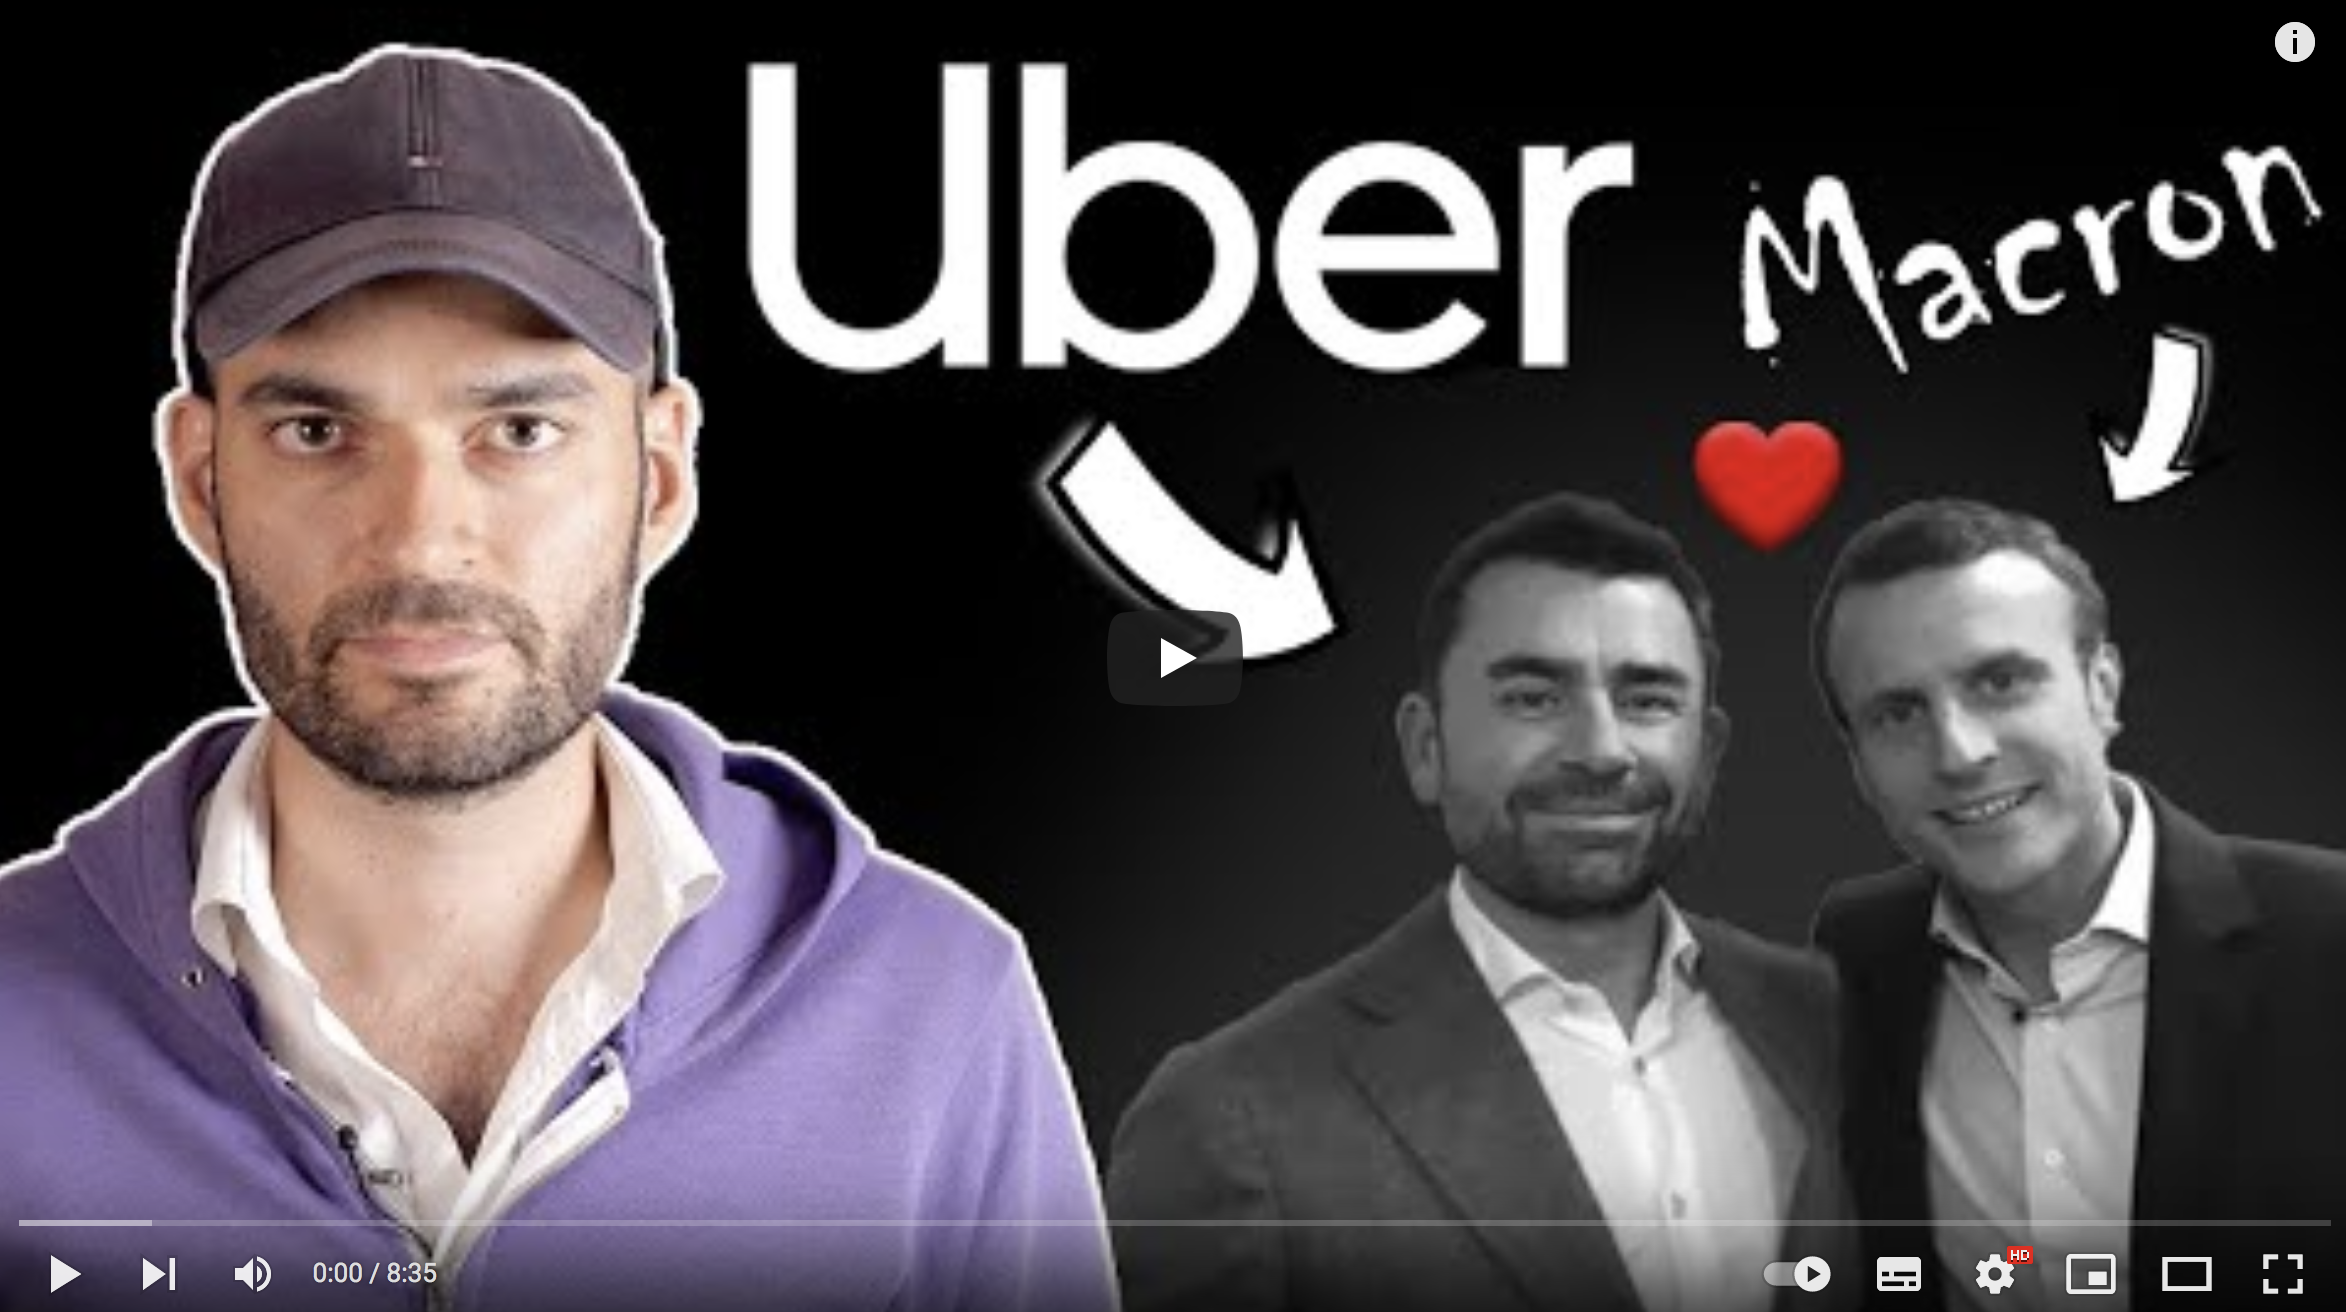 Uber Files : Emmanuel Macron a menti, Vincent Lapierre explique tout ! (VIDÉO)